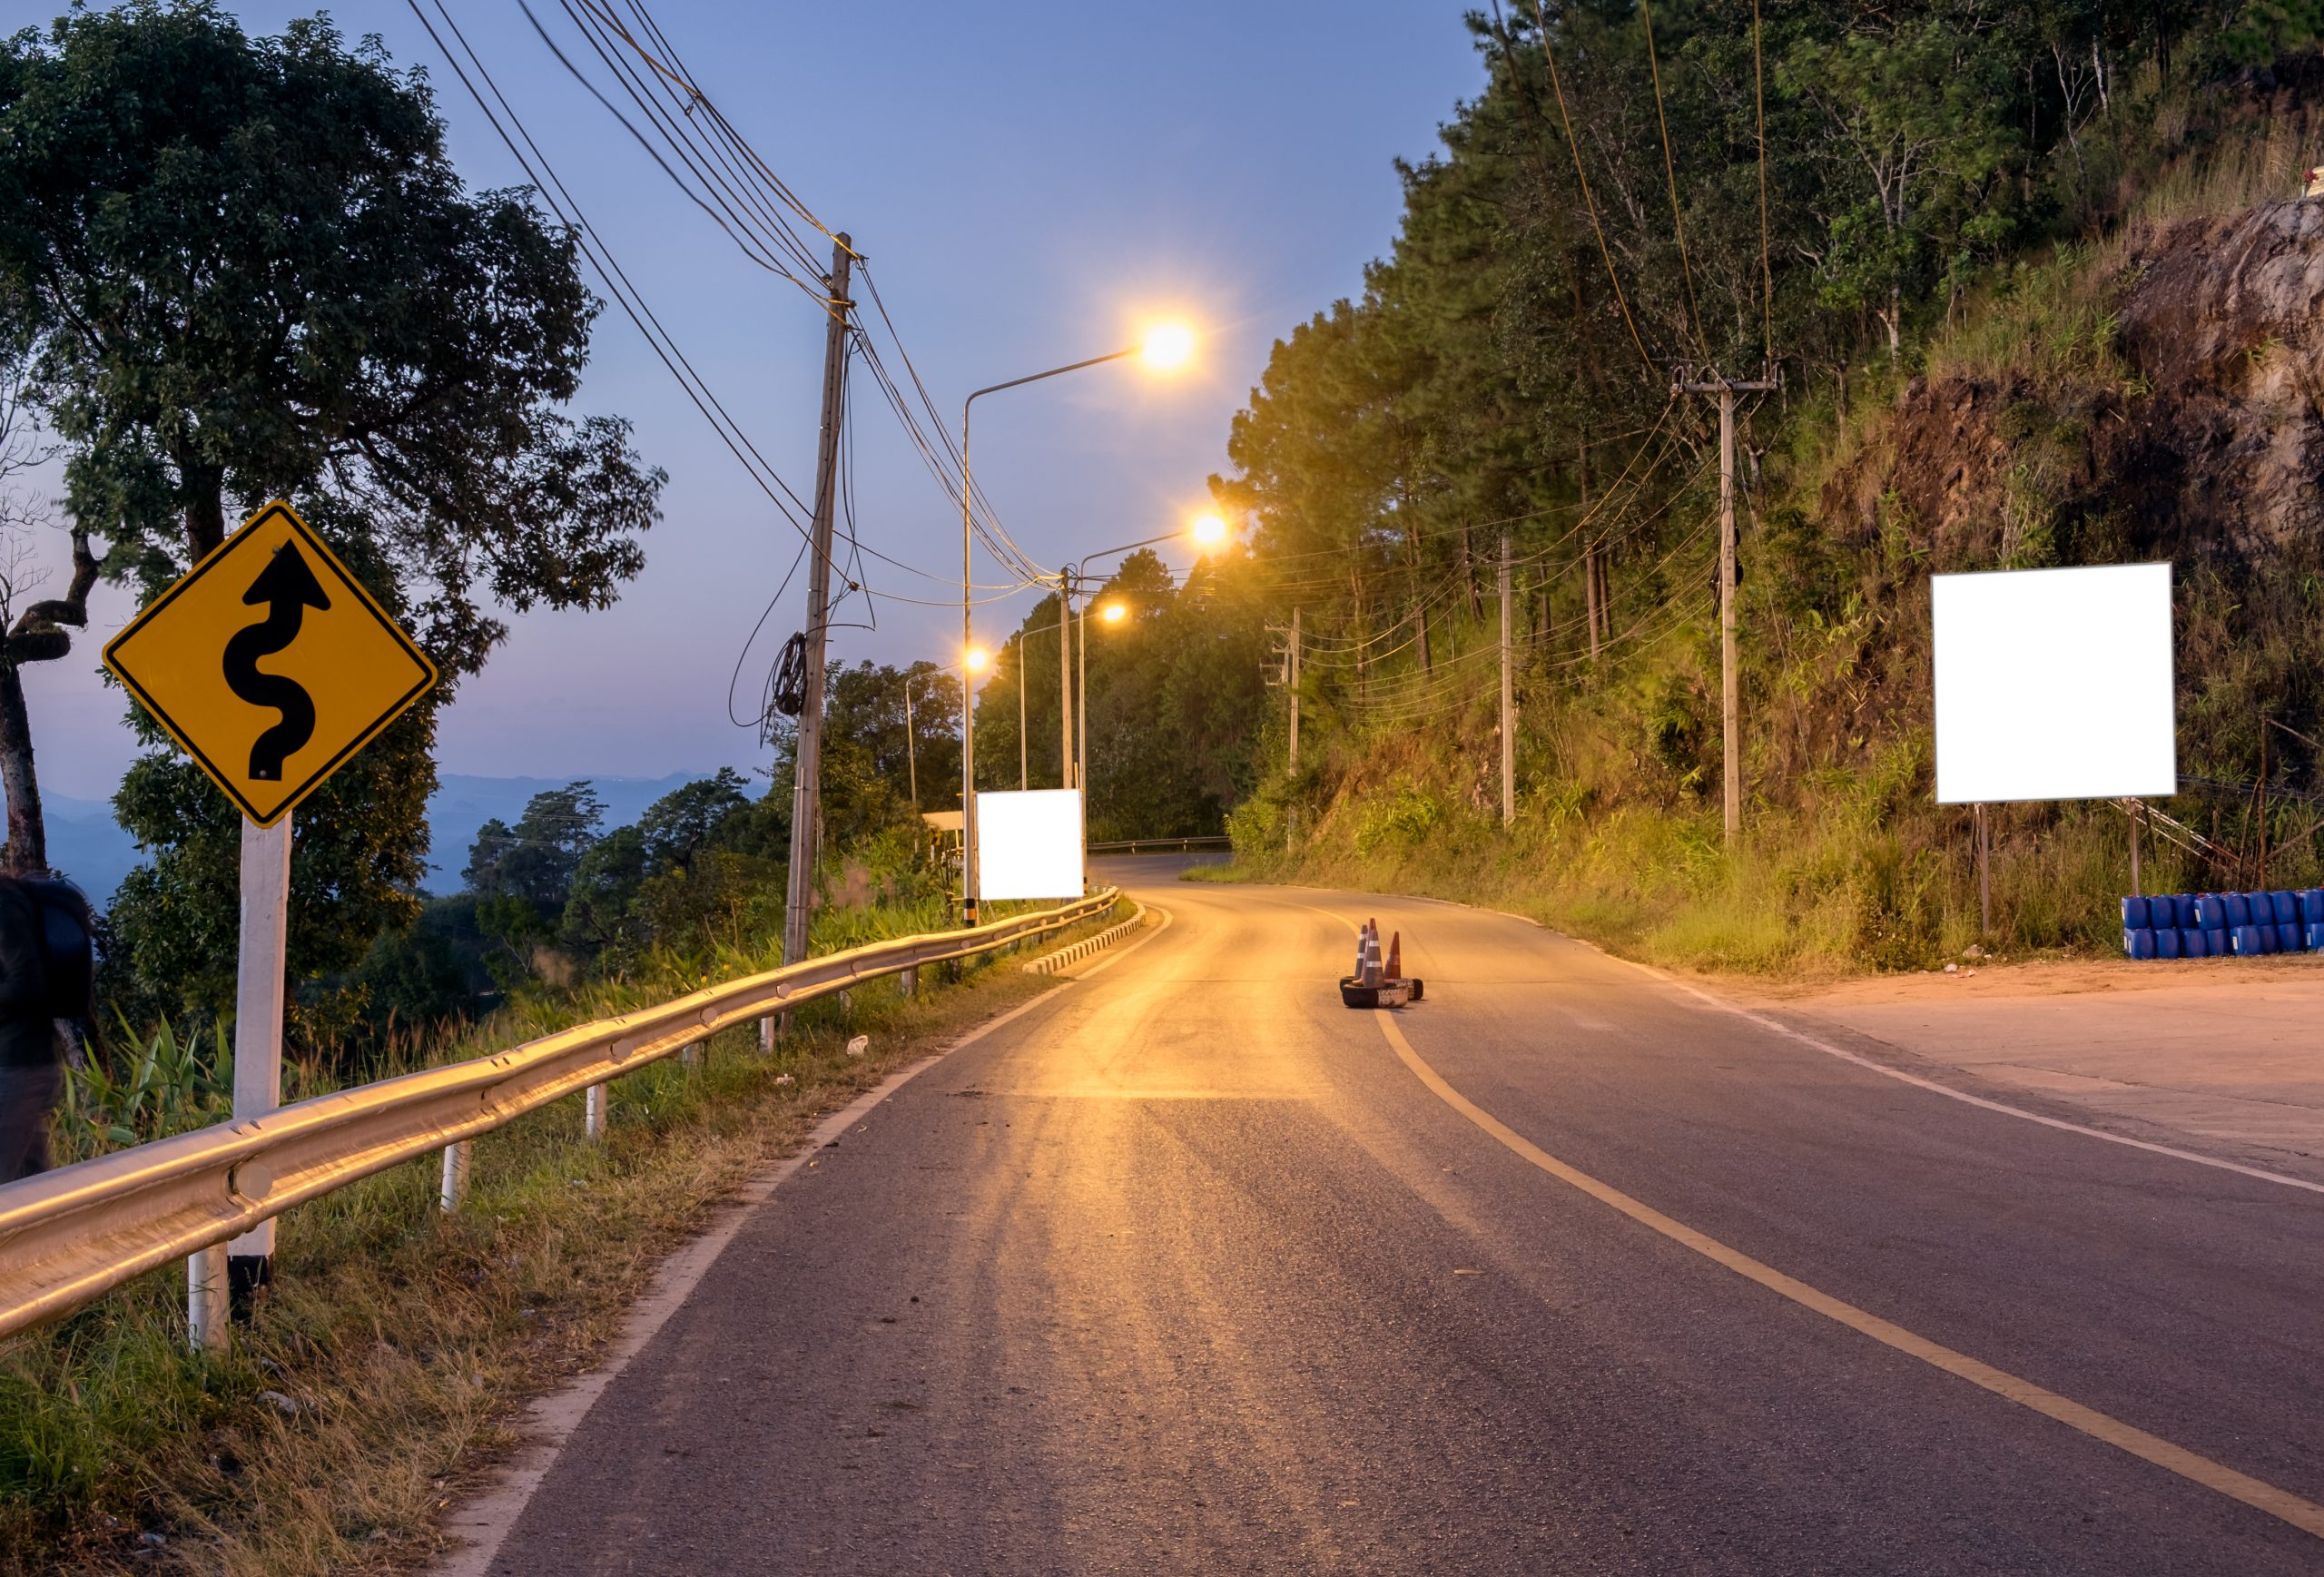 Poluarea cauzata de lumina lampilor stradale – asociata cu disparitia insectelor